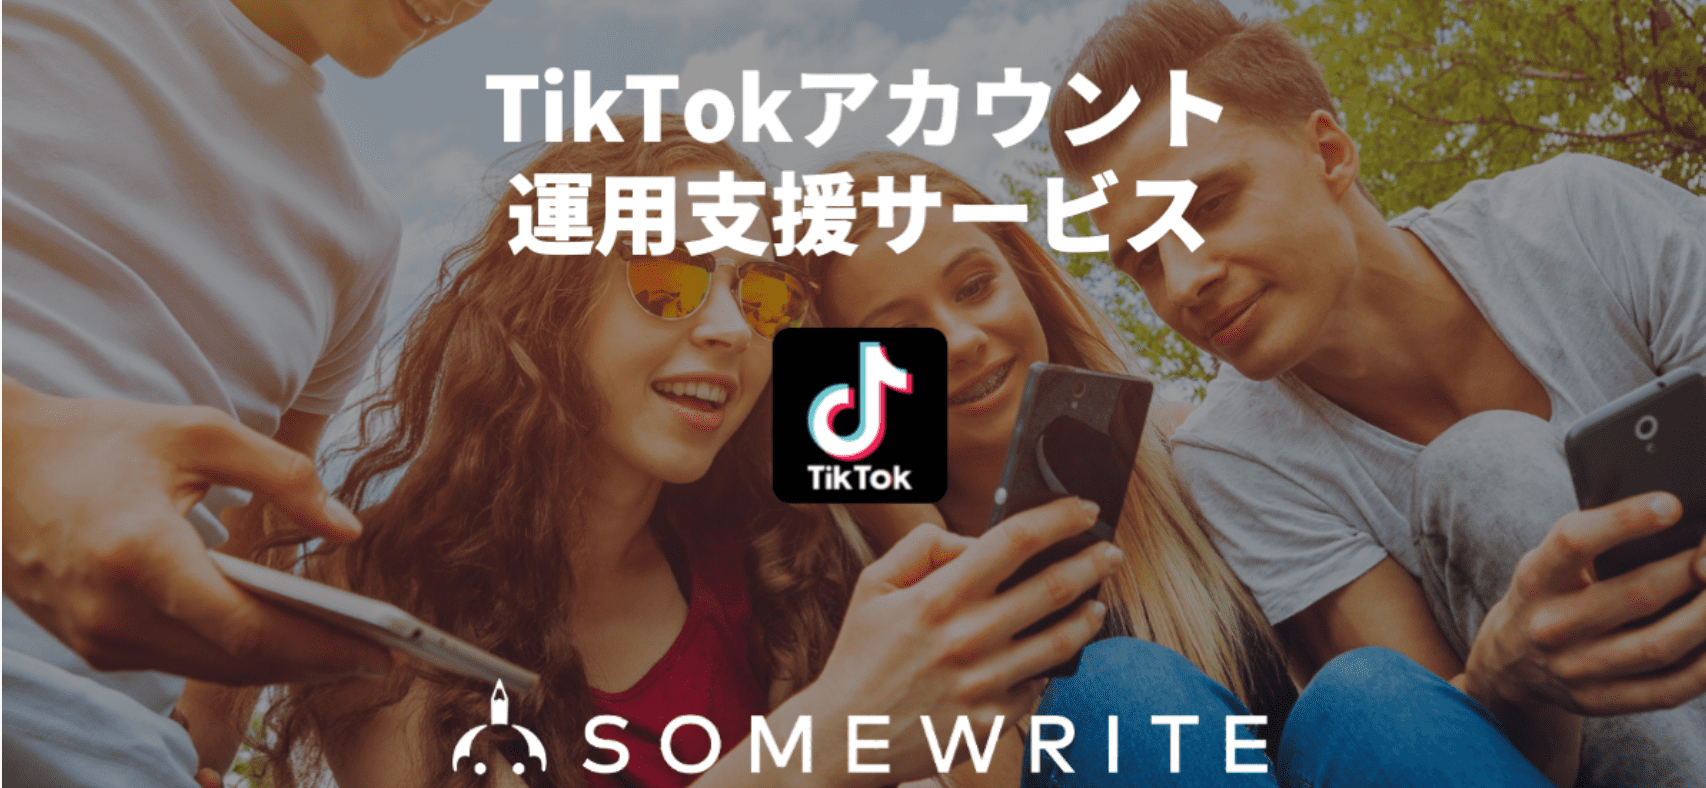 サムライトのTikTokアカウント支援サービスのアイキャッチ画像